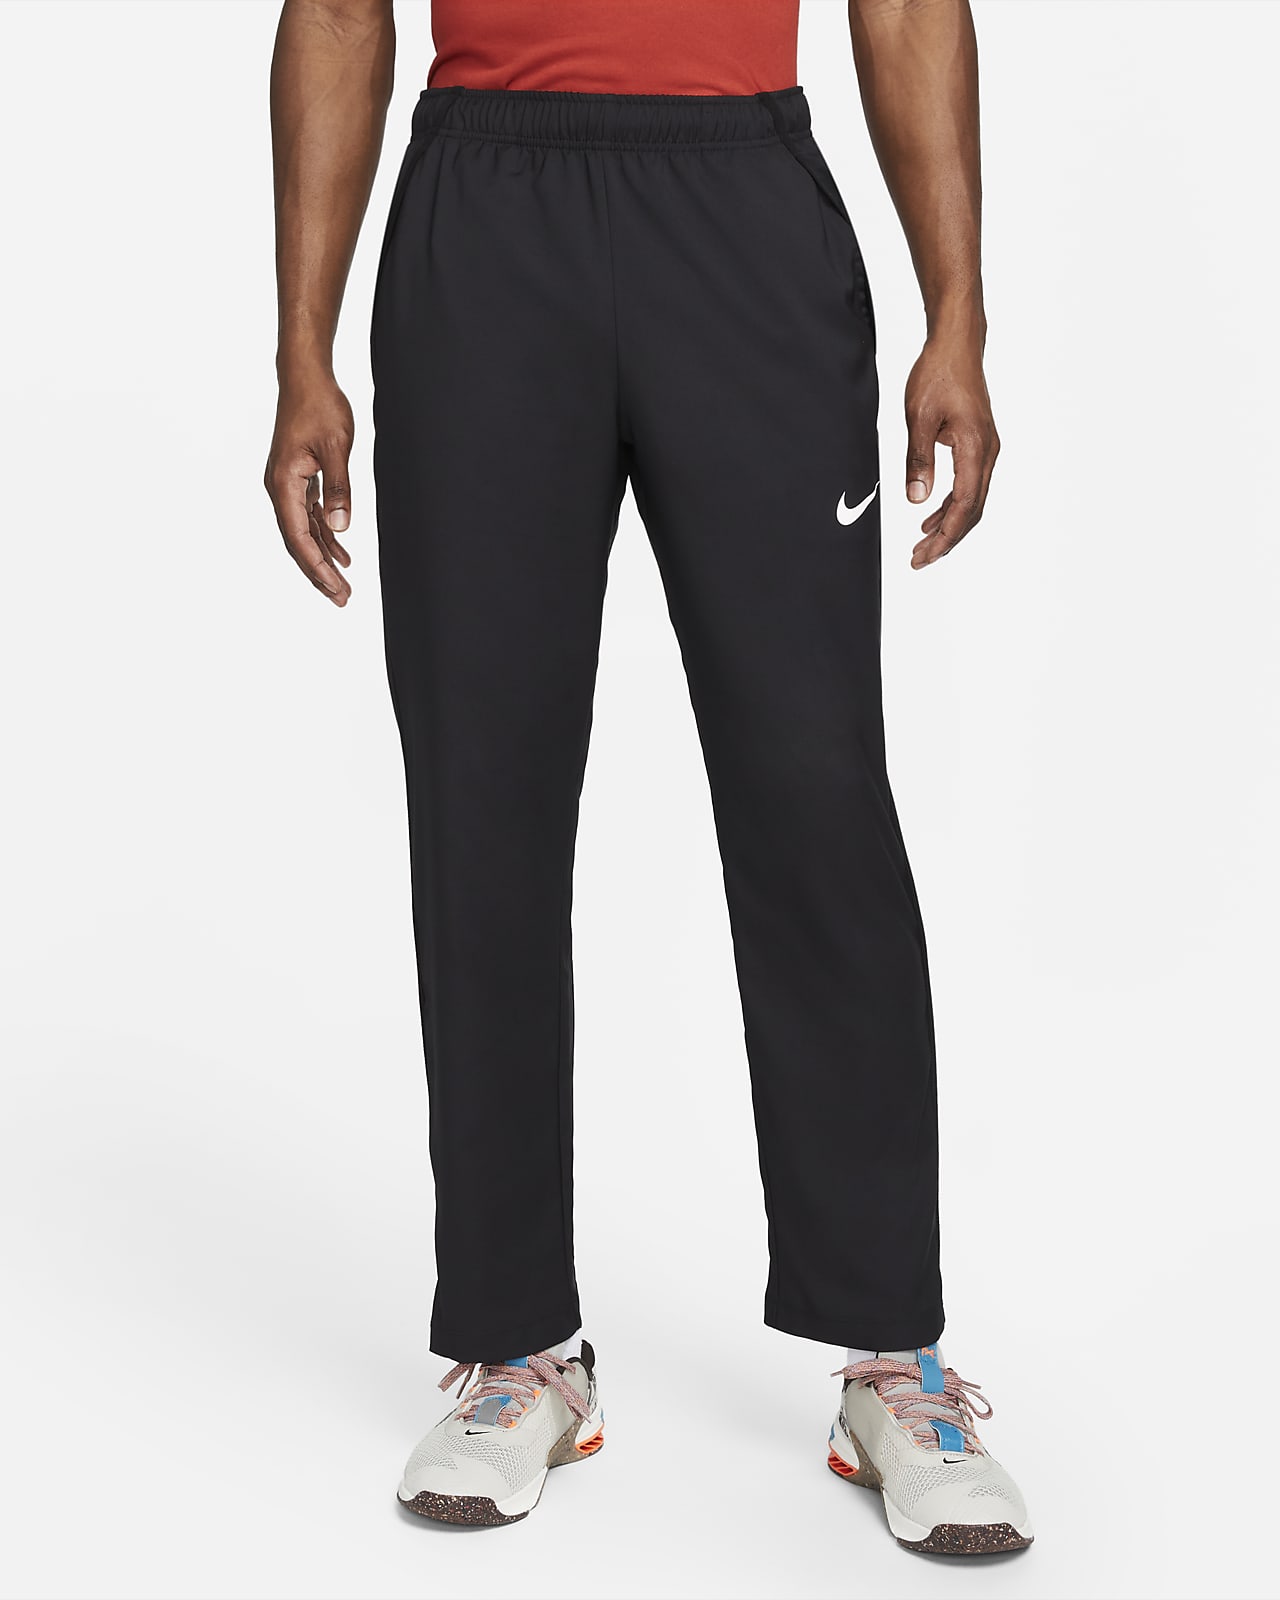 Pánské tkané tréninkové týmové kalhoty Nike Dri-FIT